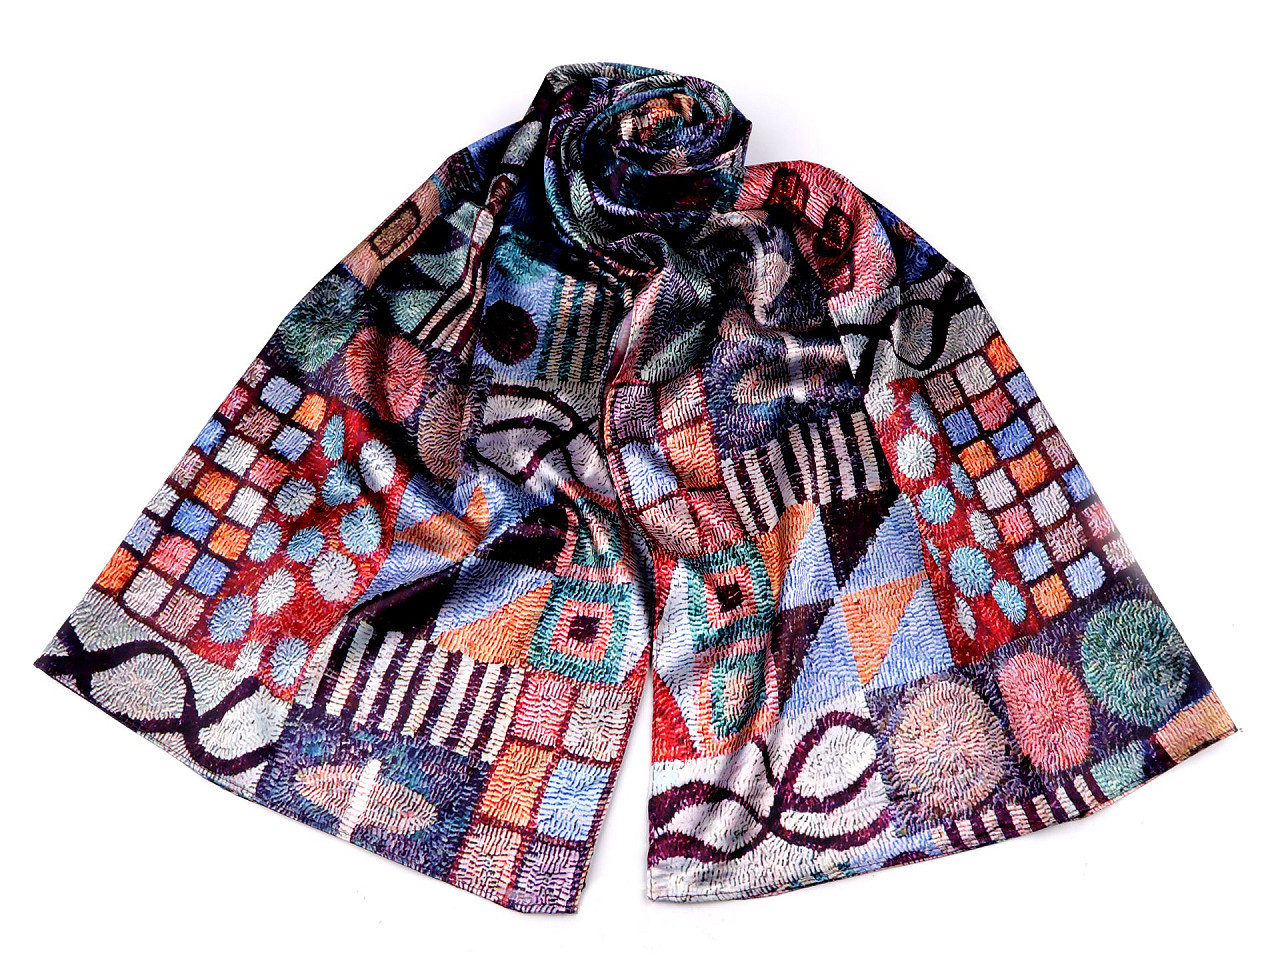 Saténový šátek / šála 70x165 cm, barva 27 fialová švestka